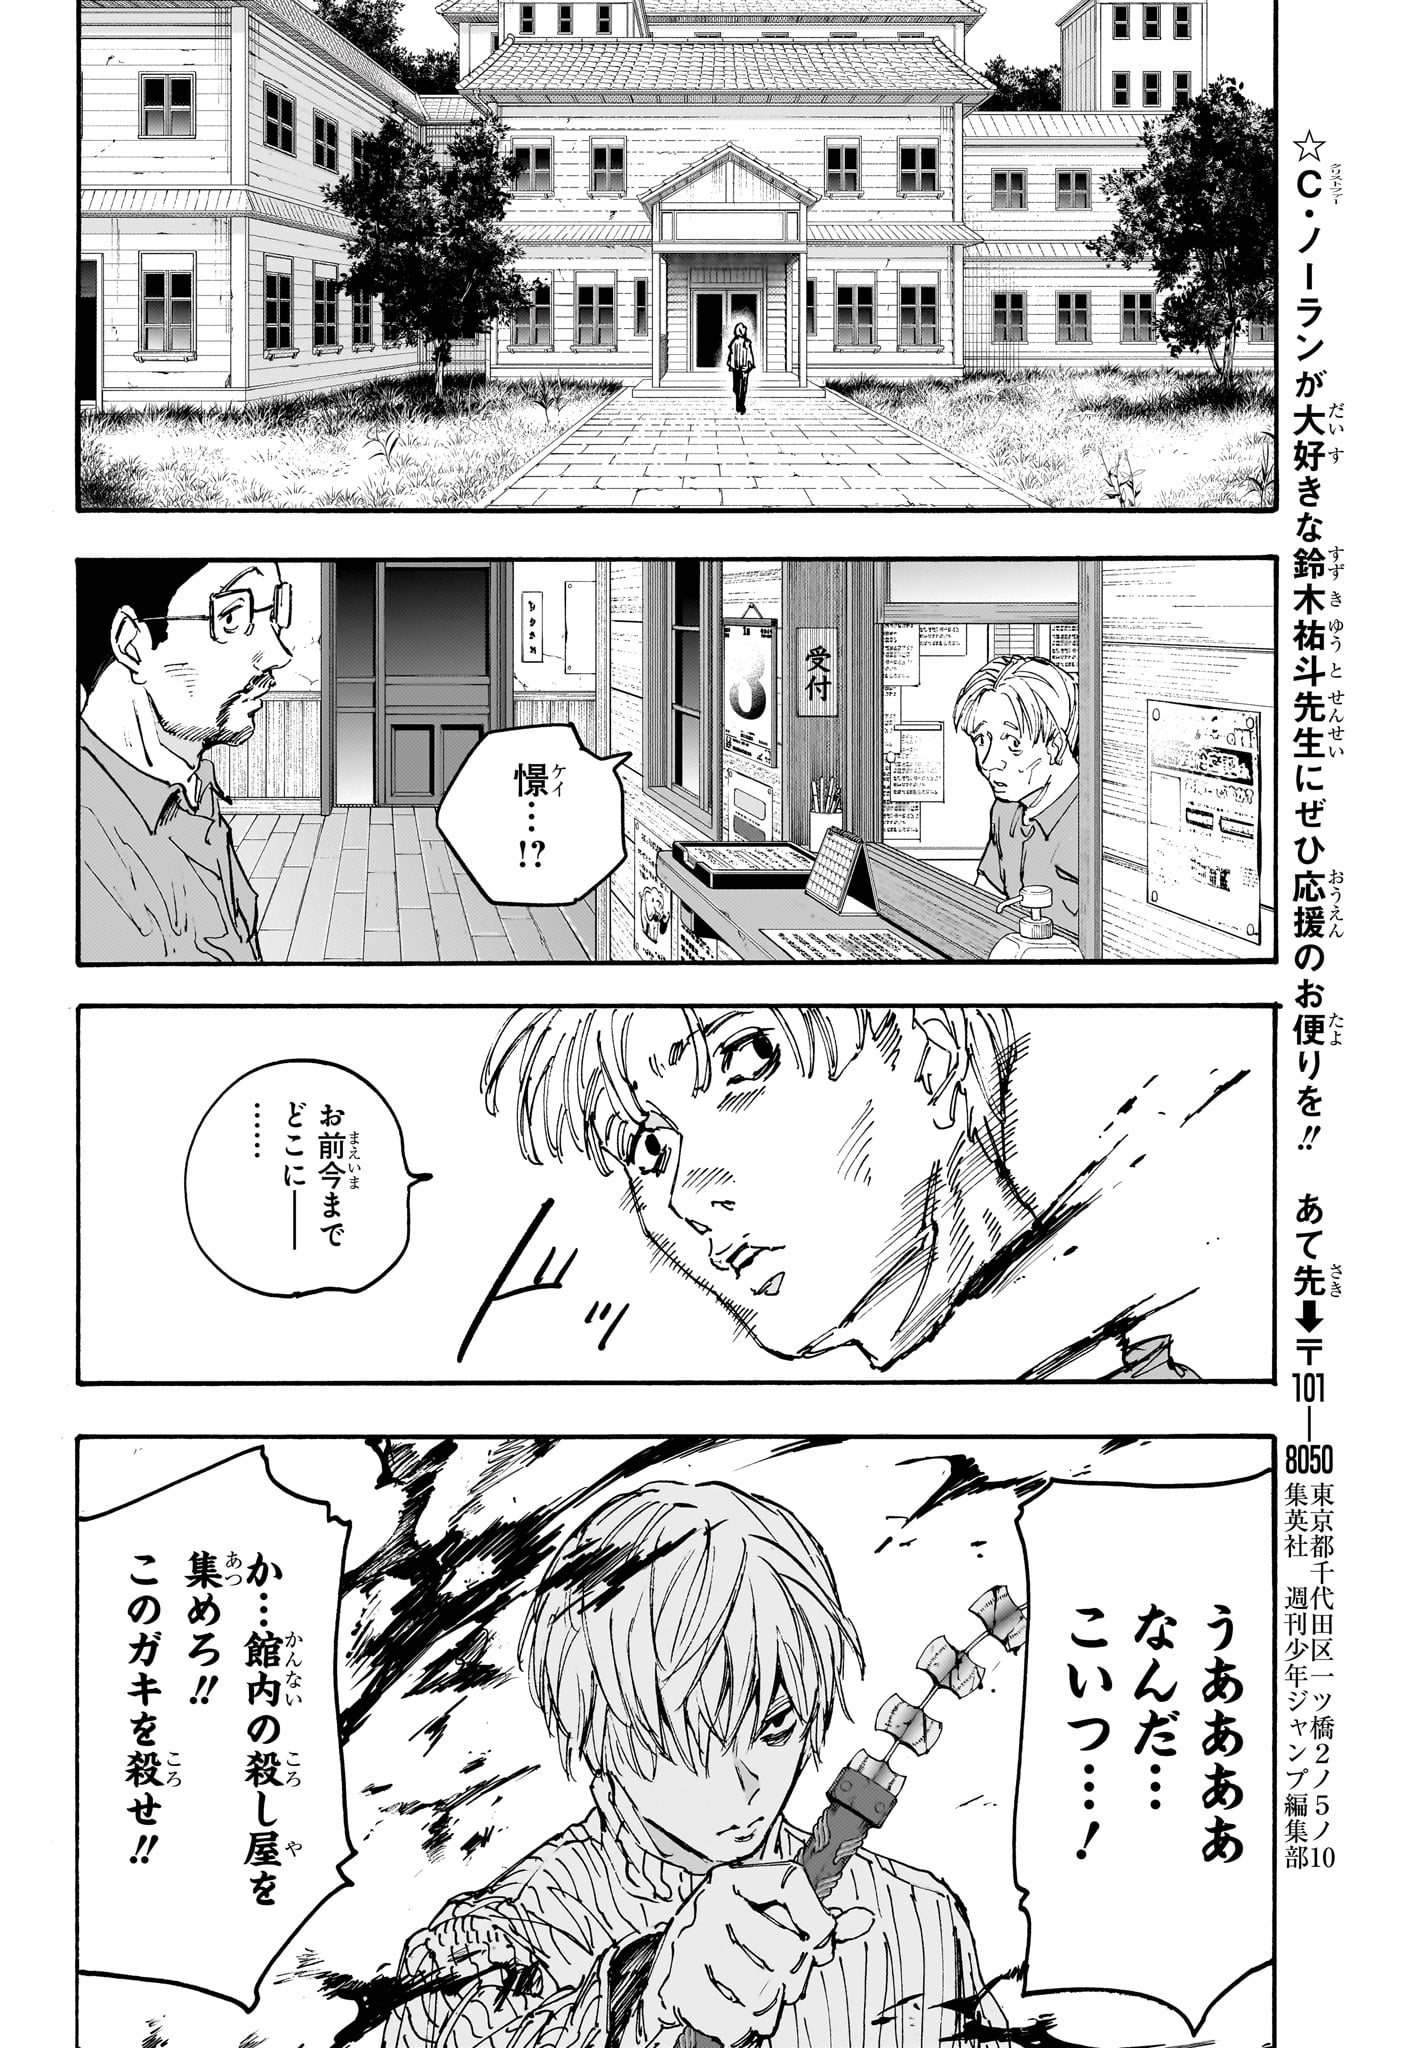 Sakamoto Days - Chapter 175 - Page 16